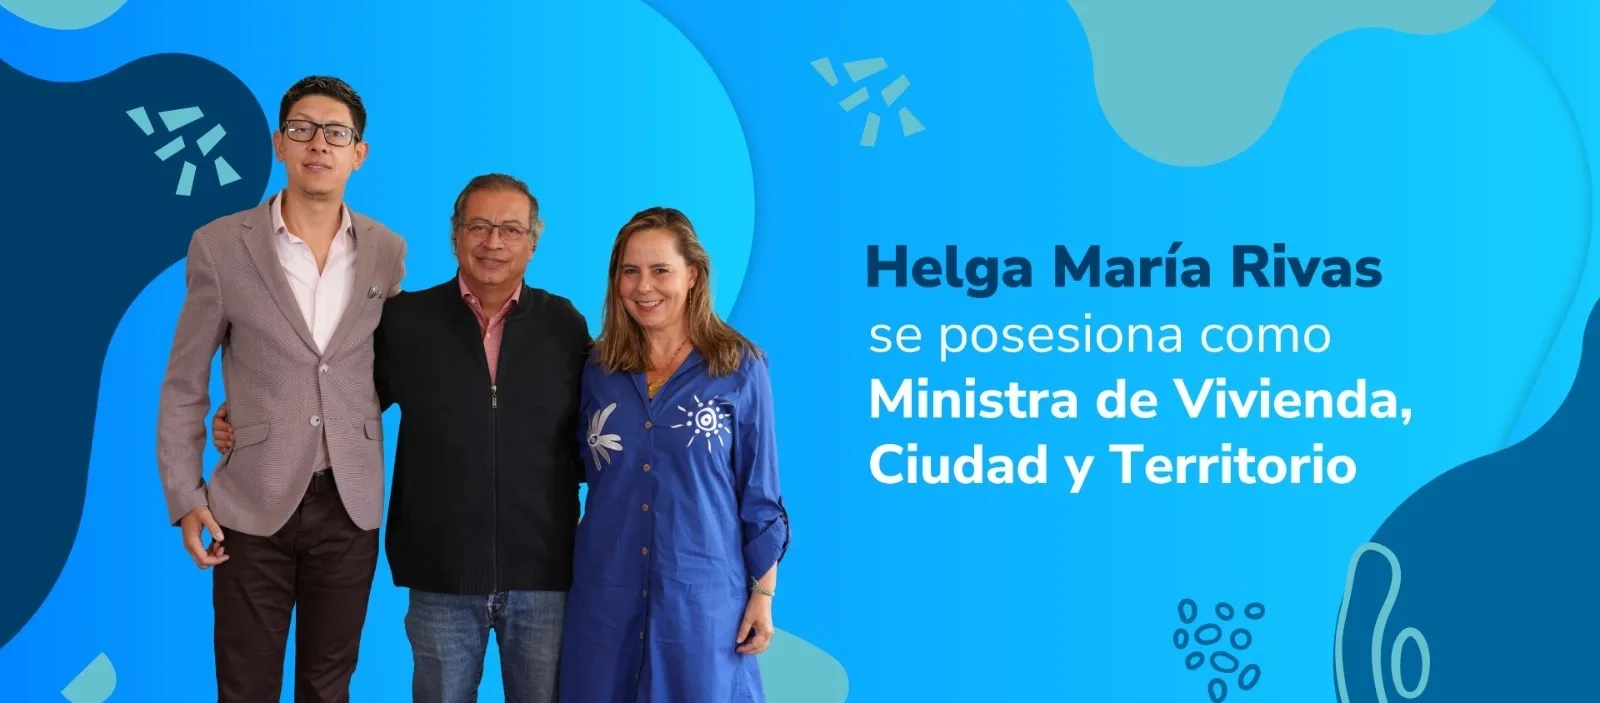 Helga María Rivas se posesiona como Ministra de Vivienda, Ciudad y Territorio